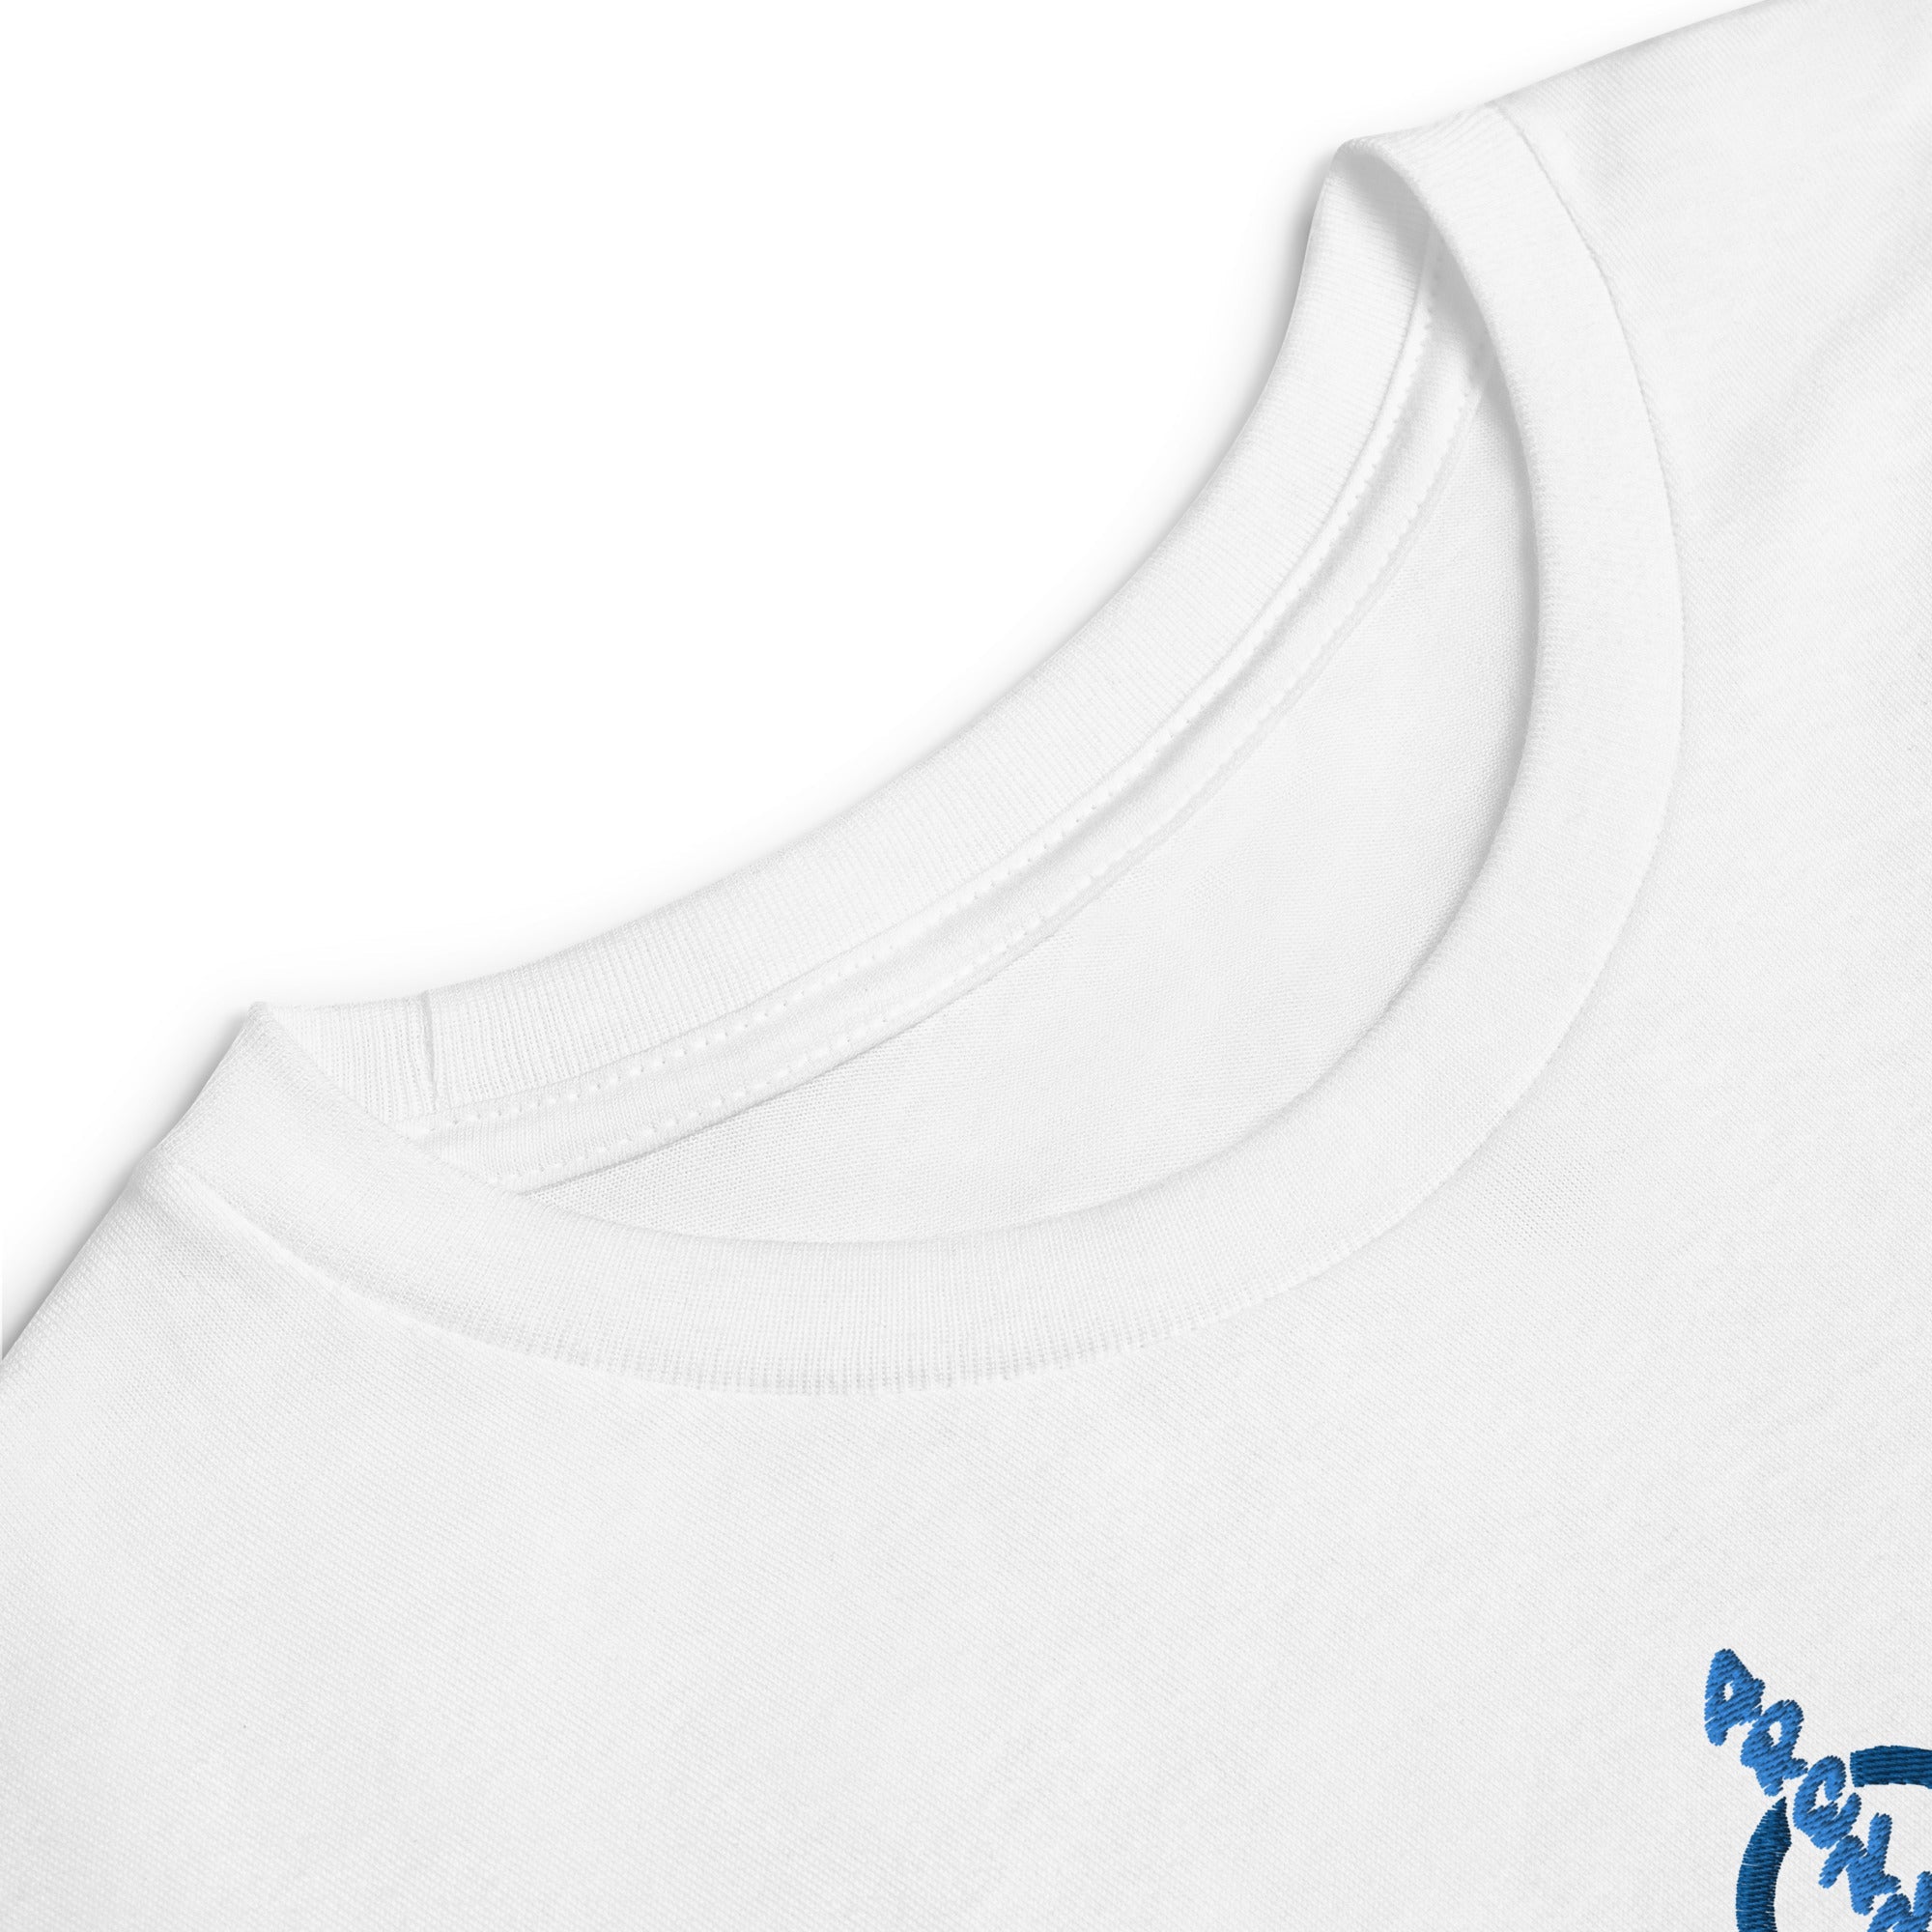 Unisex Youth Long Sleeve Shirt-2